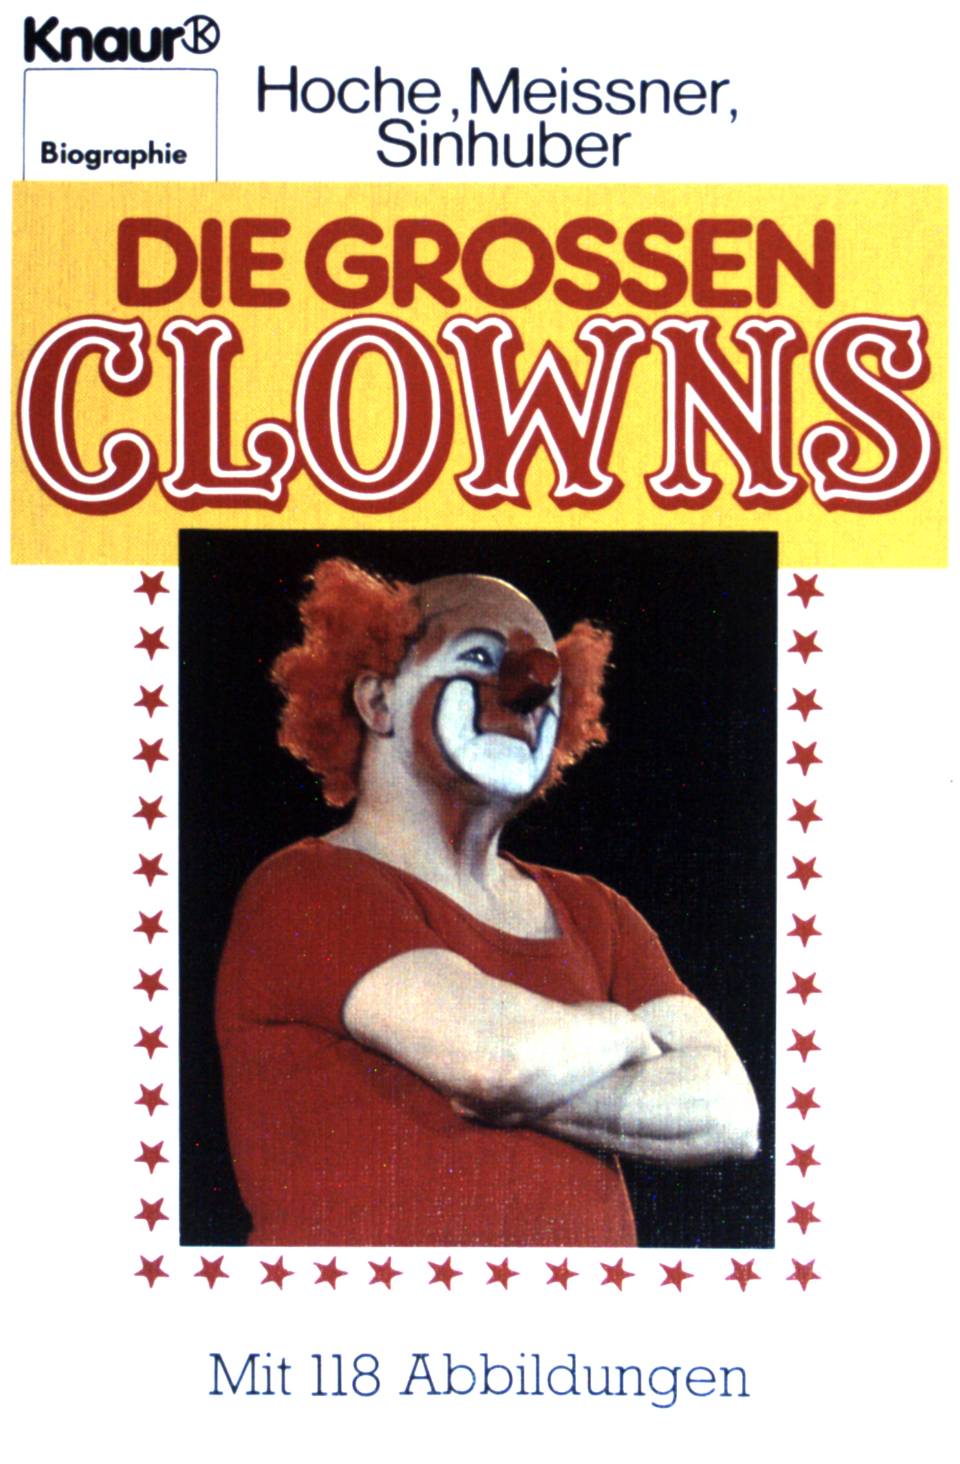 Die grossen Clowns. (Nr 2332) : Biographie - Hoche, Karl, Toni Meissner und Bartel F. Sinhuber